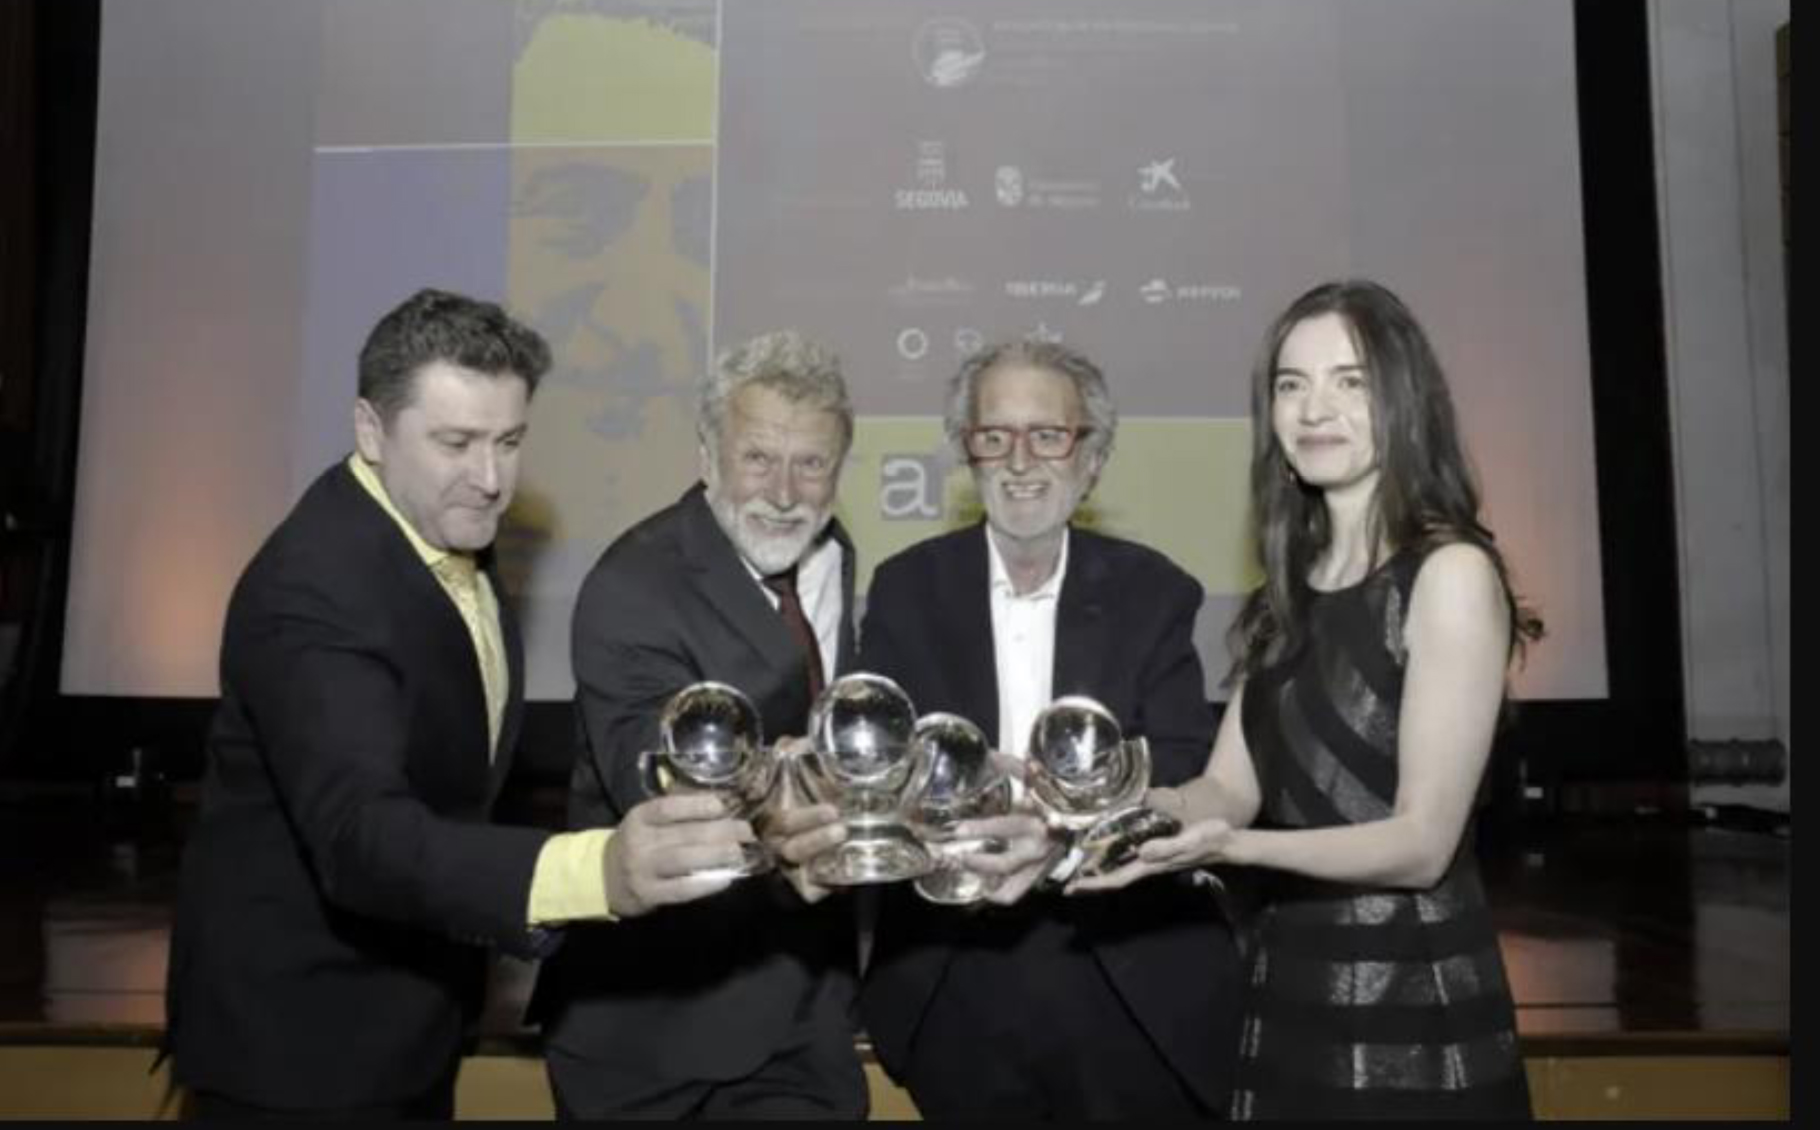 De izquierda a derecha, los seleccionados en la XXXVIII edición: Óscar Mijallo (finalista), Miguel Ángel de la Fuente (ganador), Aurelio Martín (Cirilo de Honor)y María Senovilla (finalista)